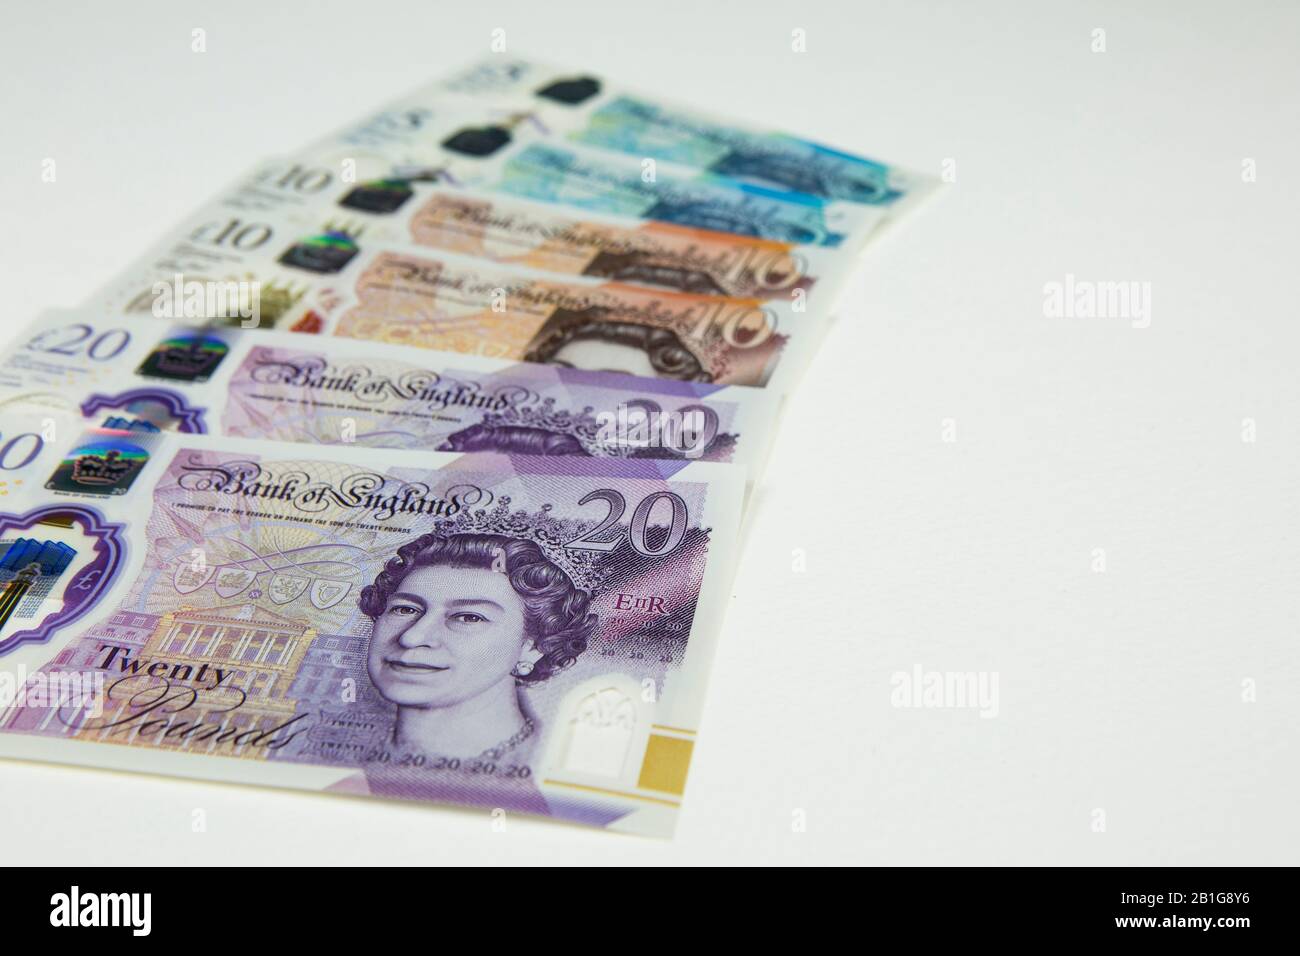 Neue 20 Pfund Turner Sterling Kunststoff-Polymerbanknote. Bank of England Currency UK, britische Geldscheine mit Kopierraum. Stockfoto